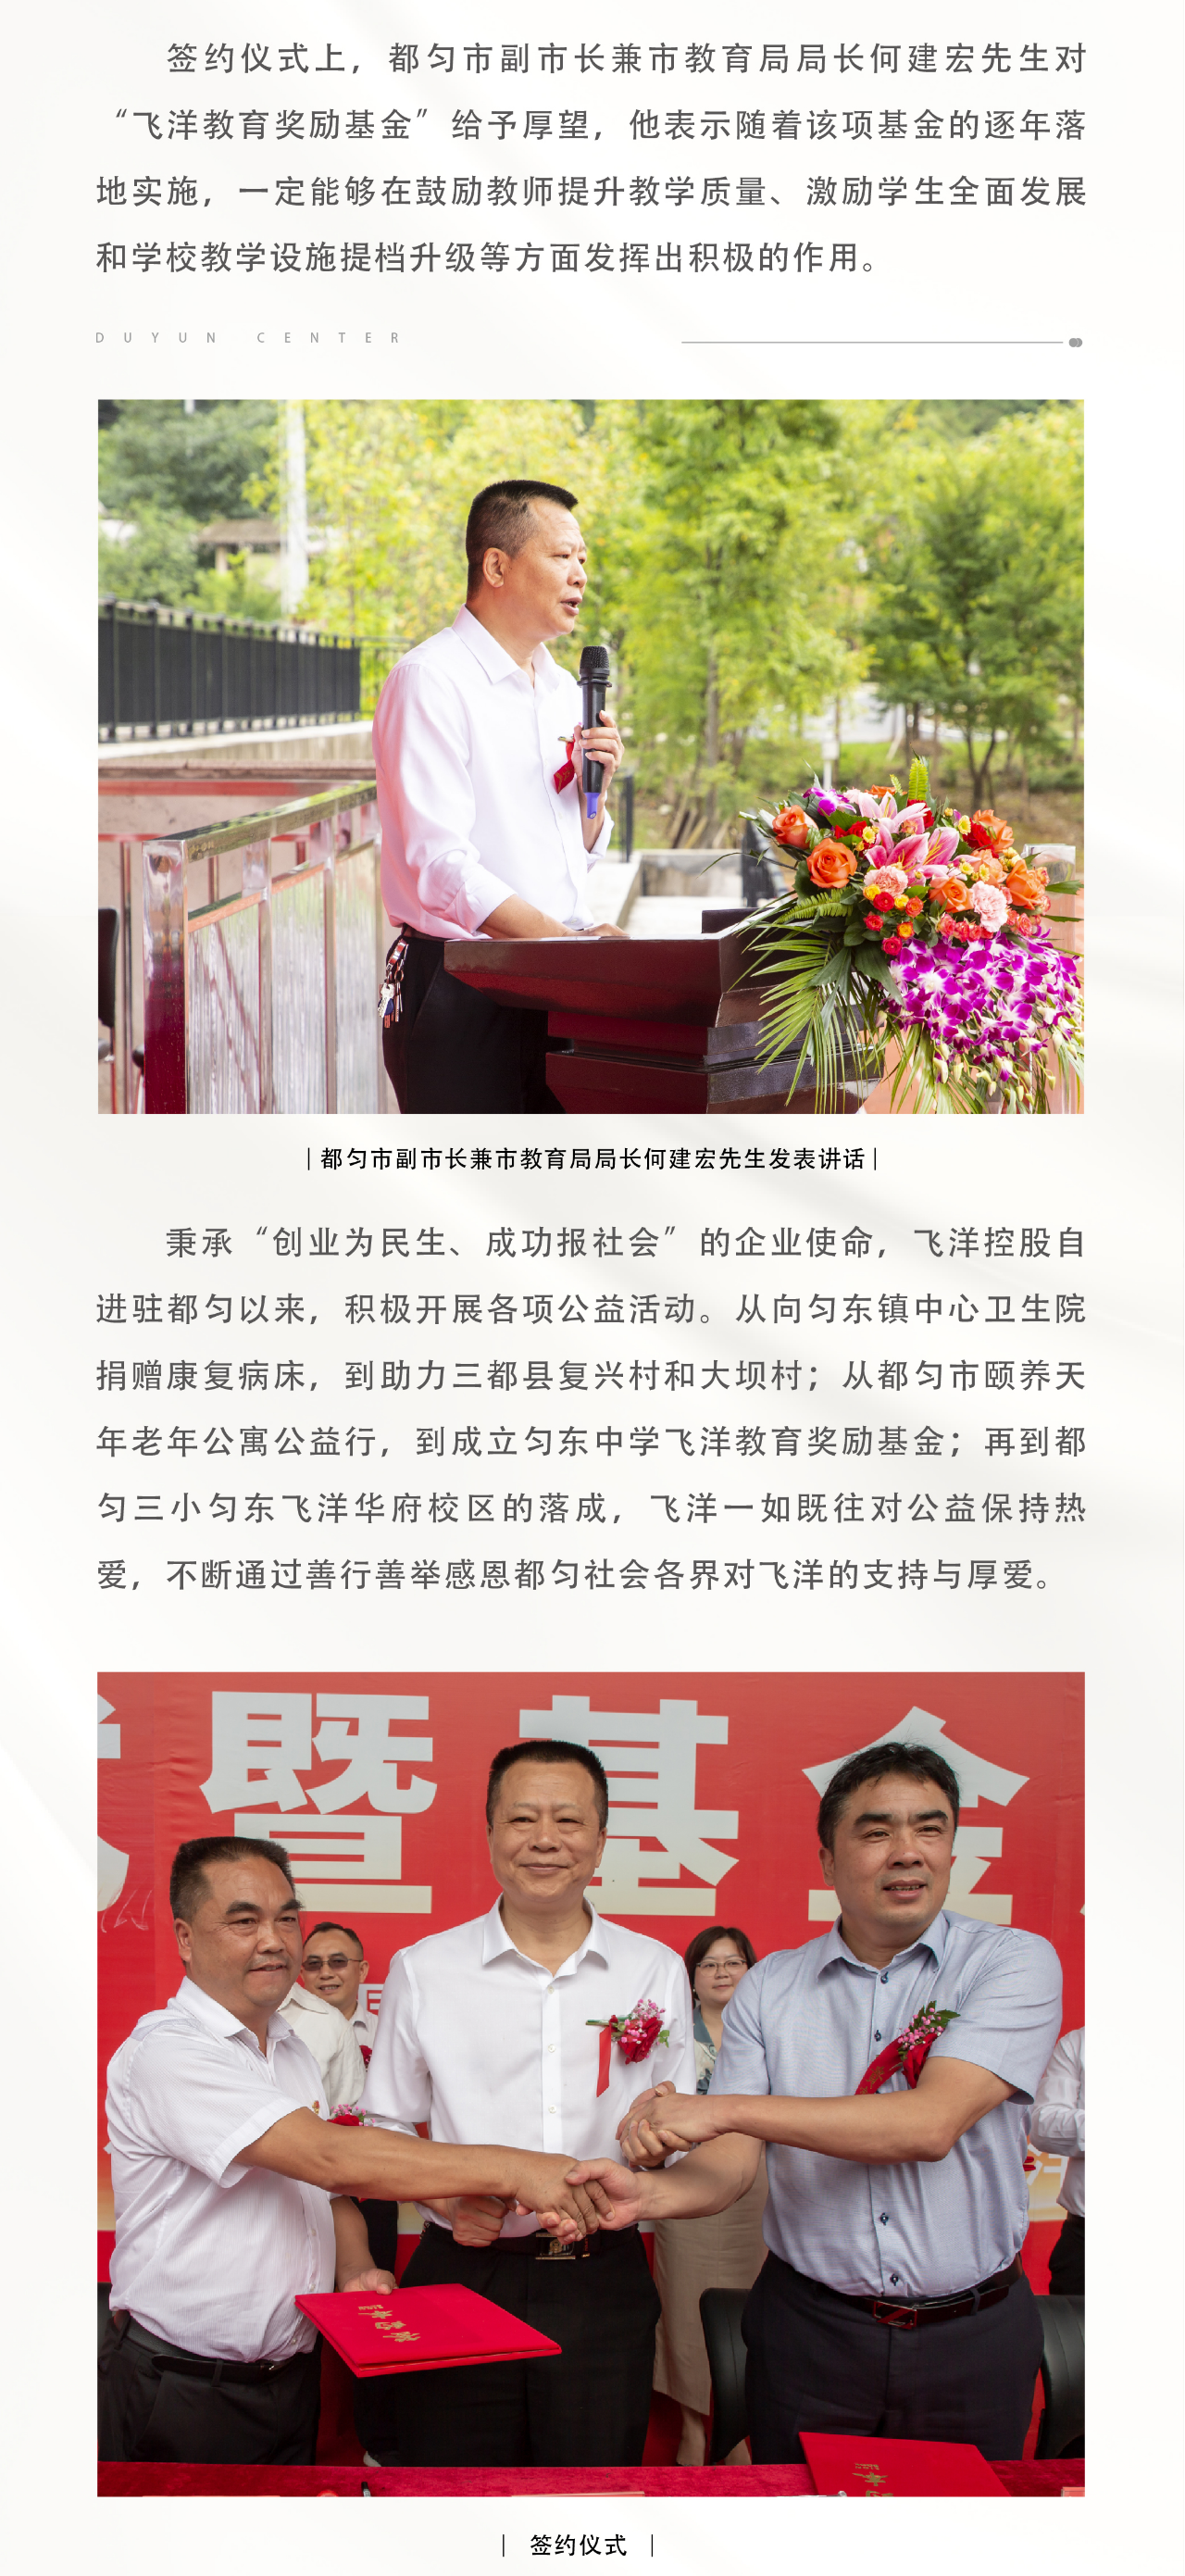 重庆飞洋控股集团捐赠500万元设立都匀匀东中学飞洋教育奖励基金